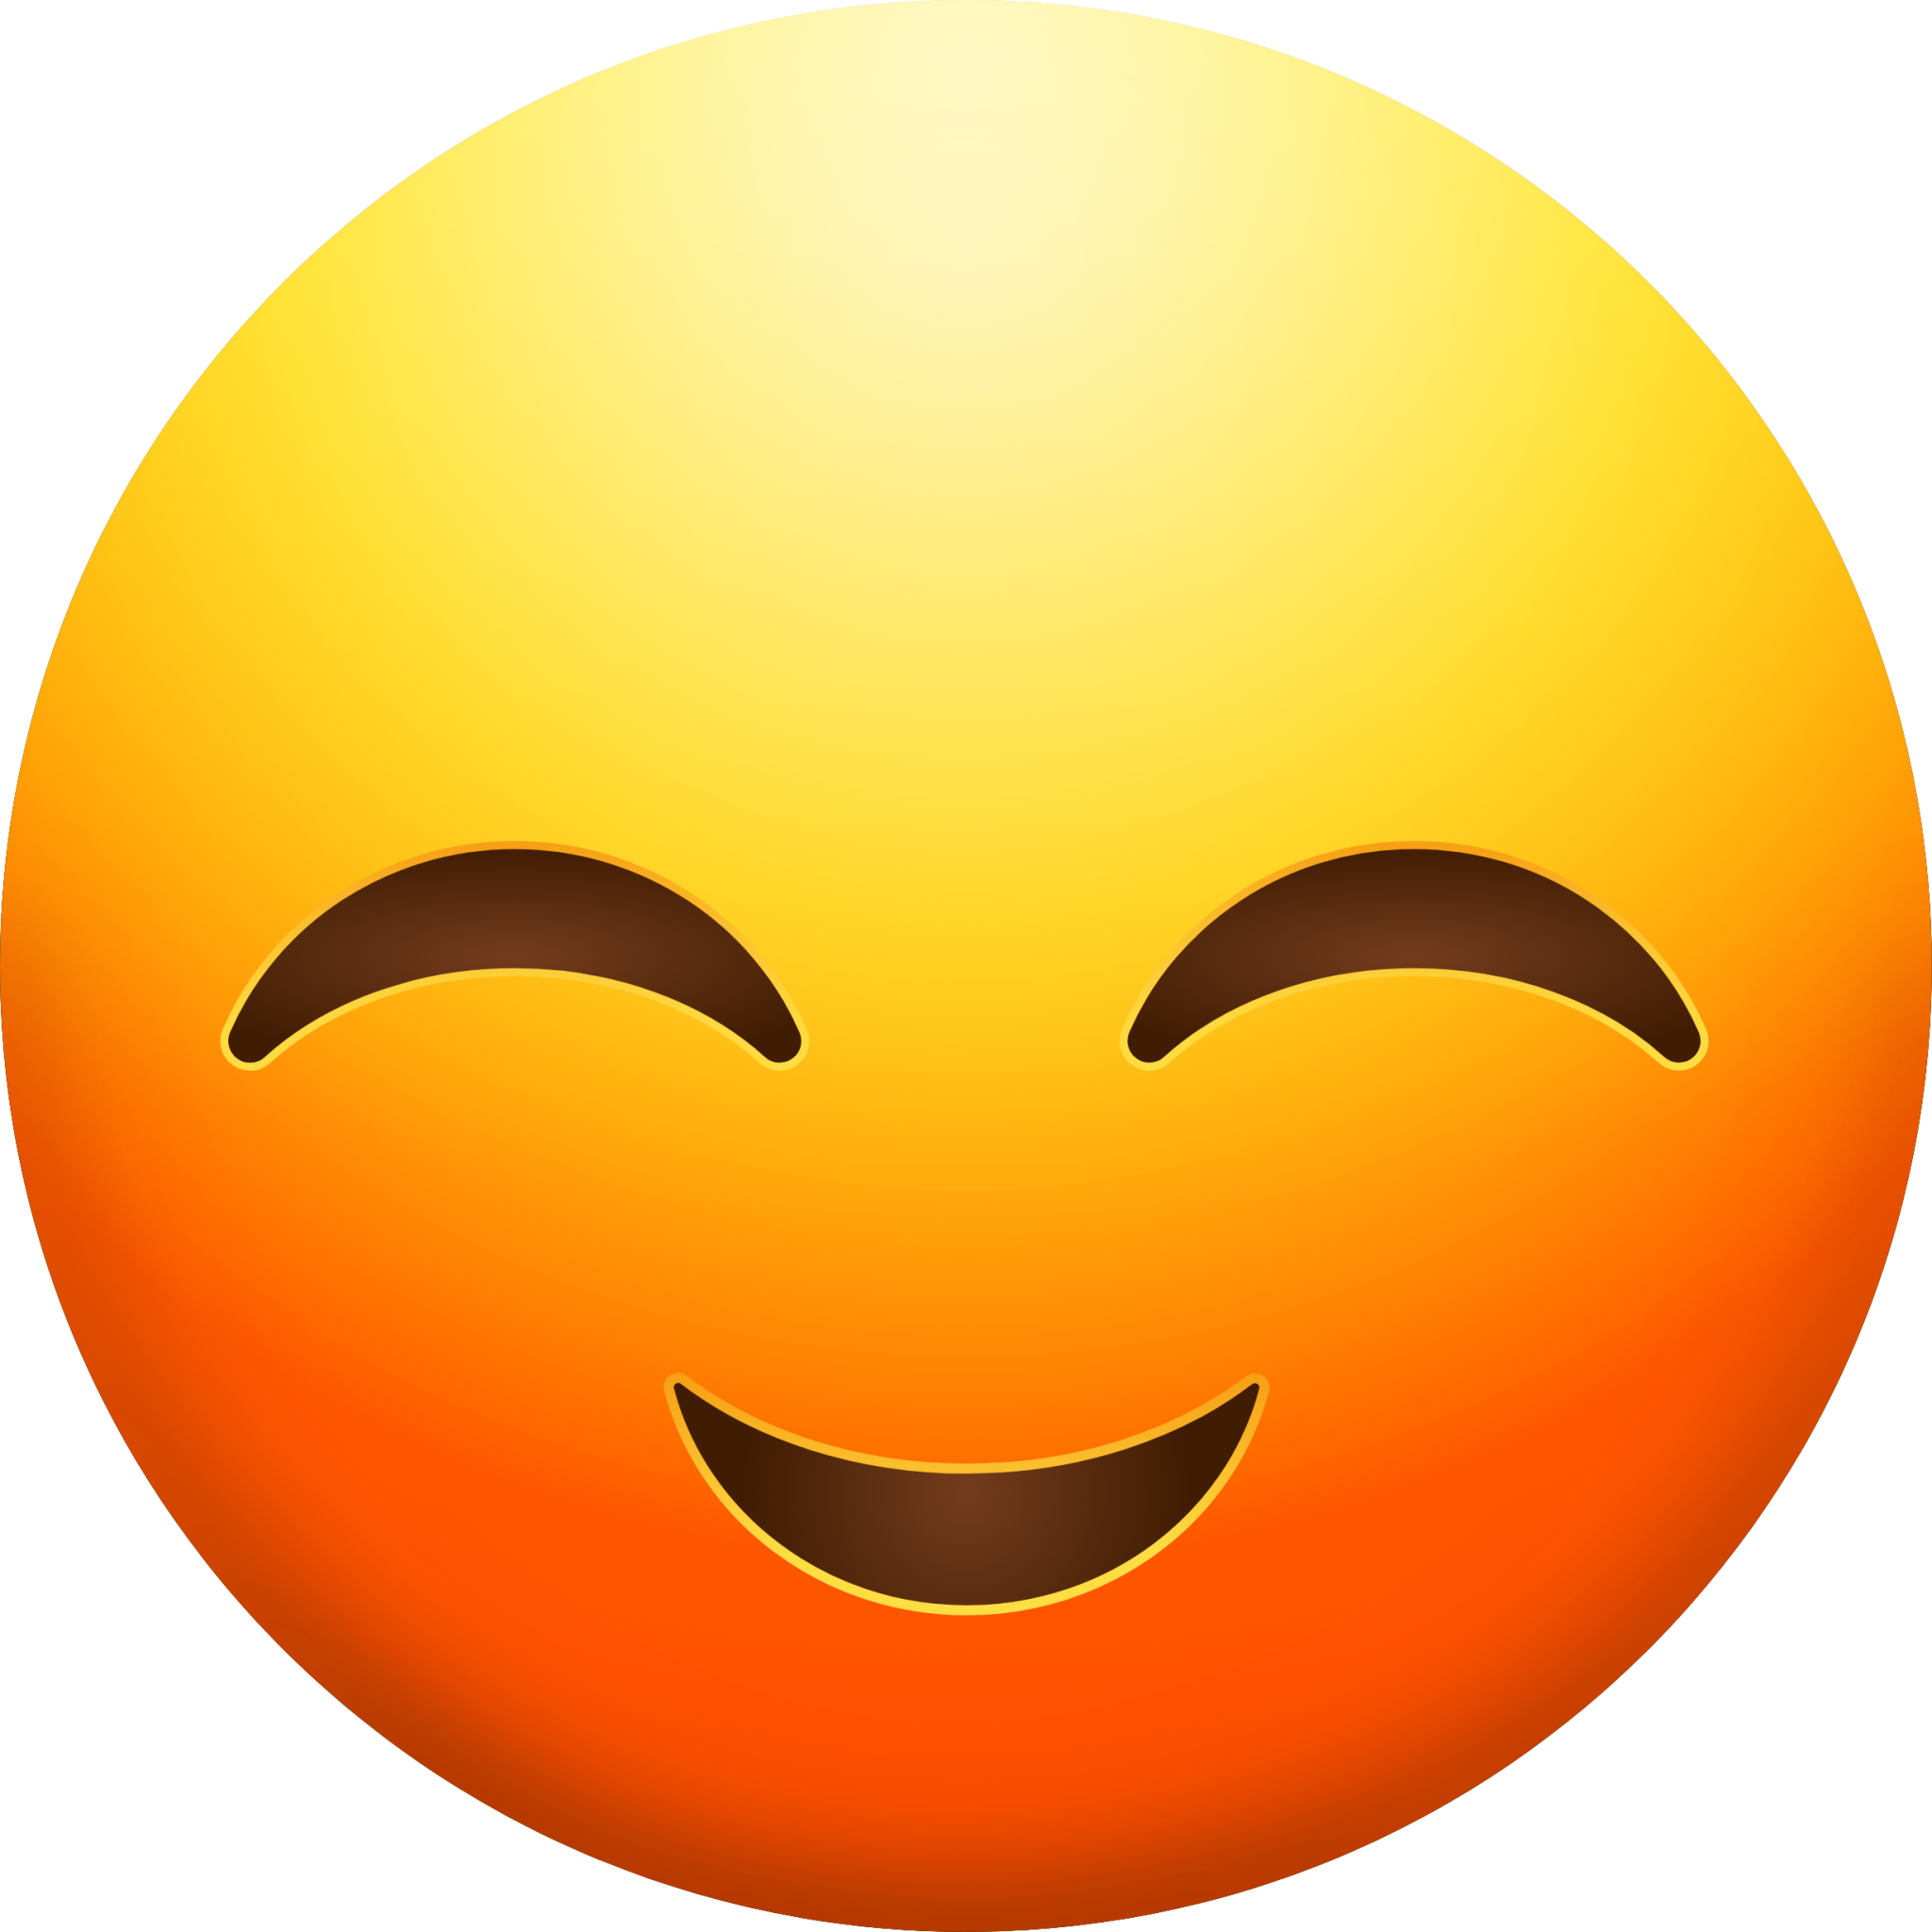 Optimistic Face emoji